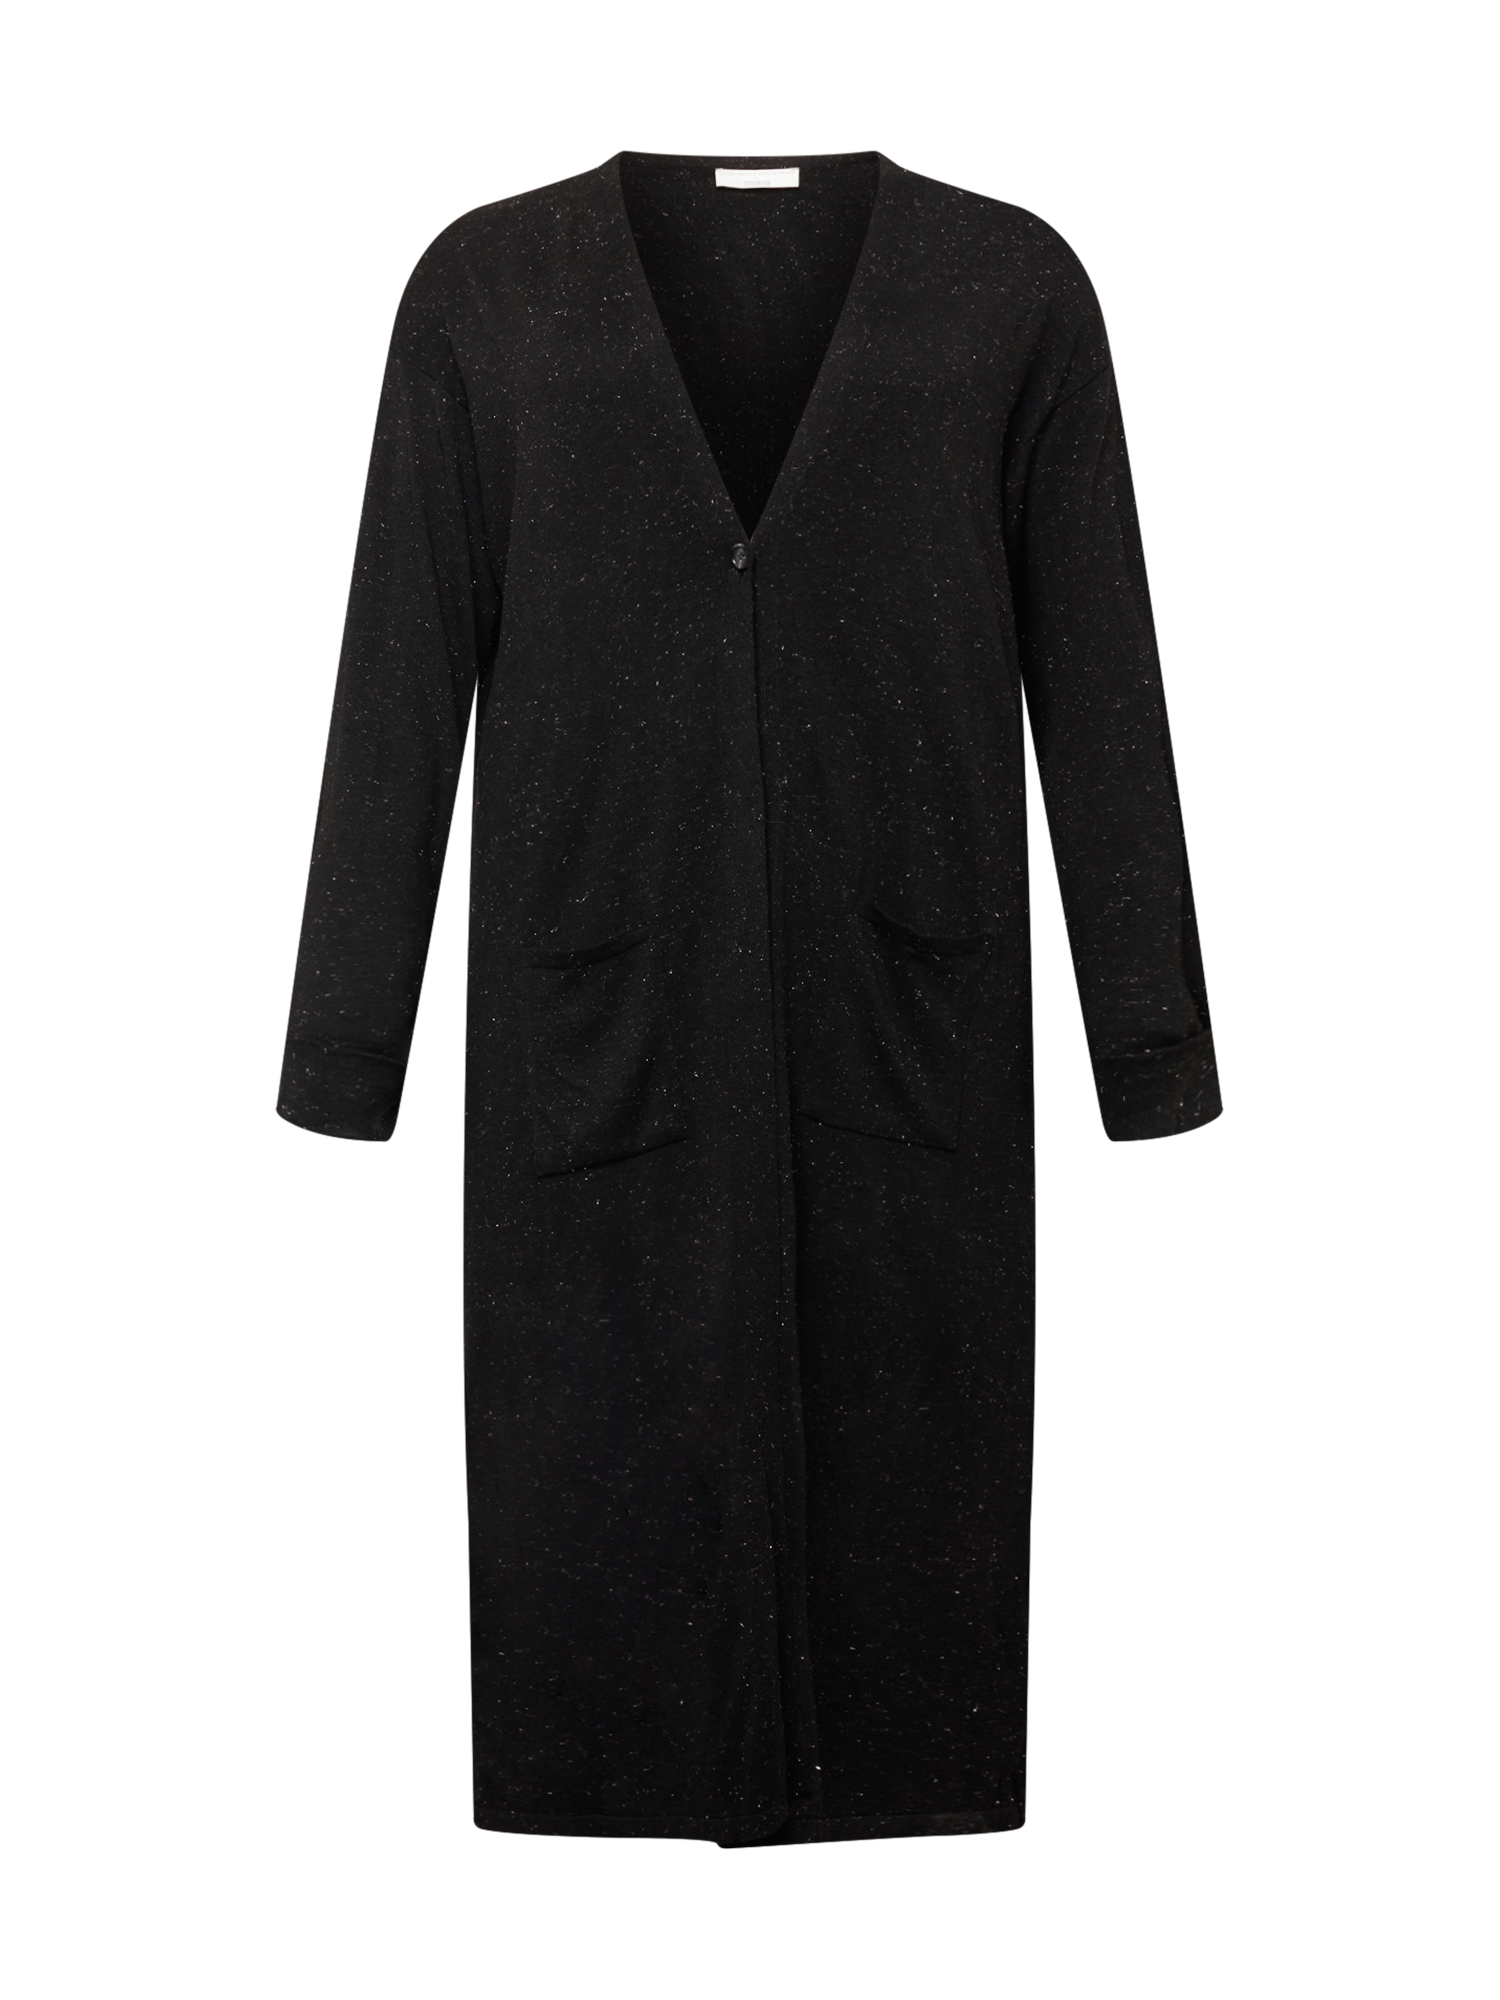 Plus size Kobiety Guido Maria Kretschmer Curvy Collection Płaszcz z dzianiny Laura w kolorze Czarnym 